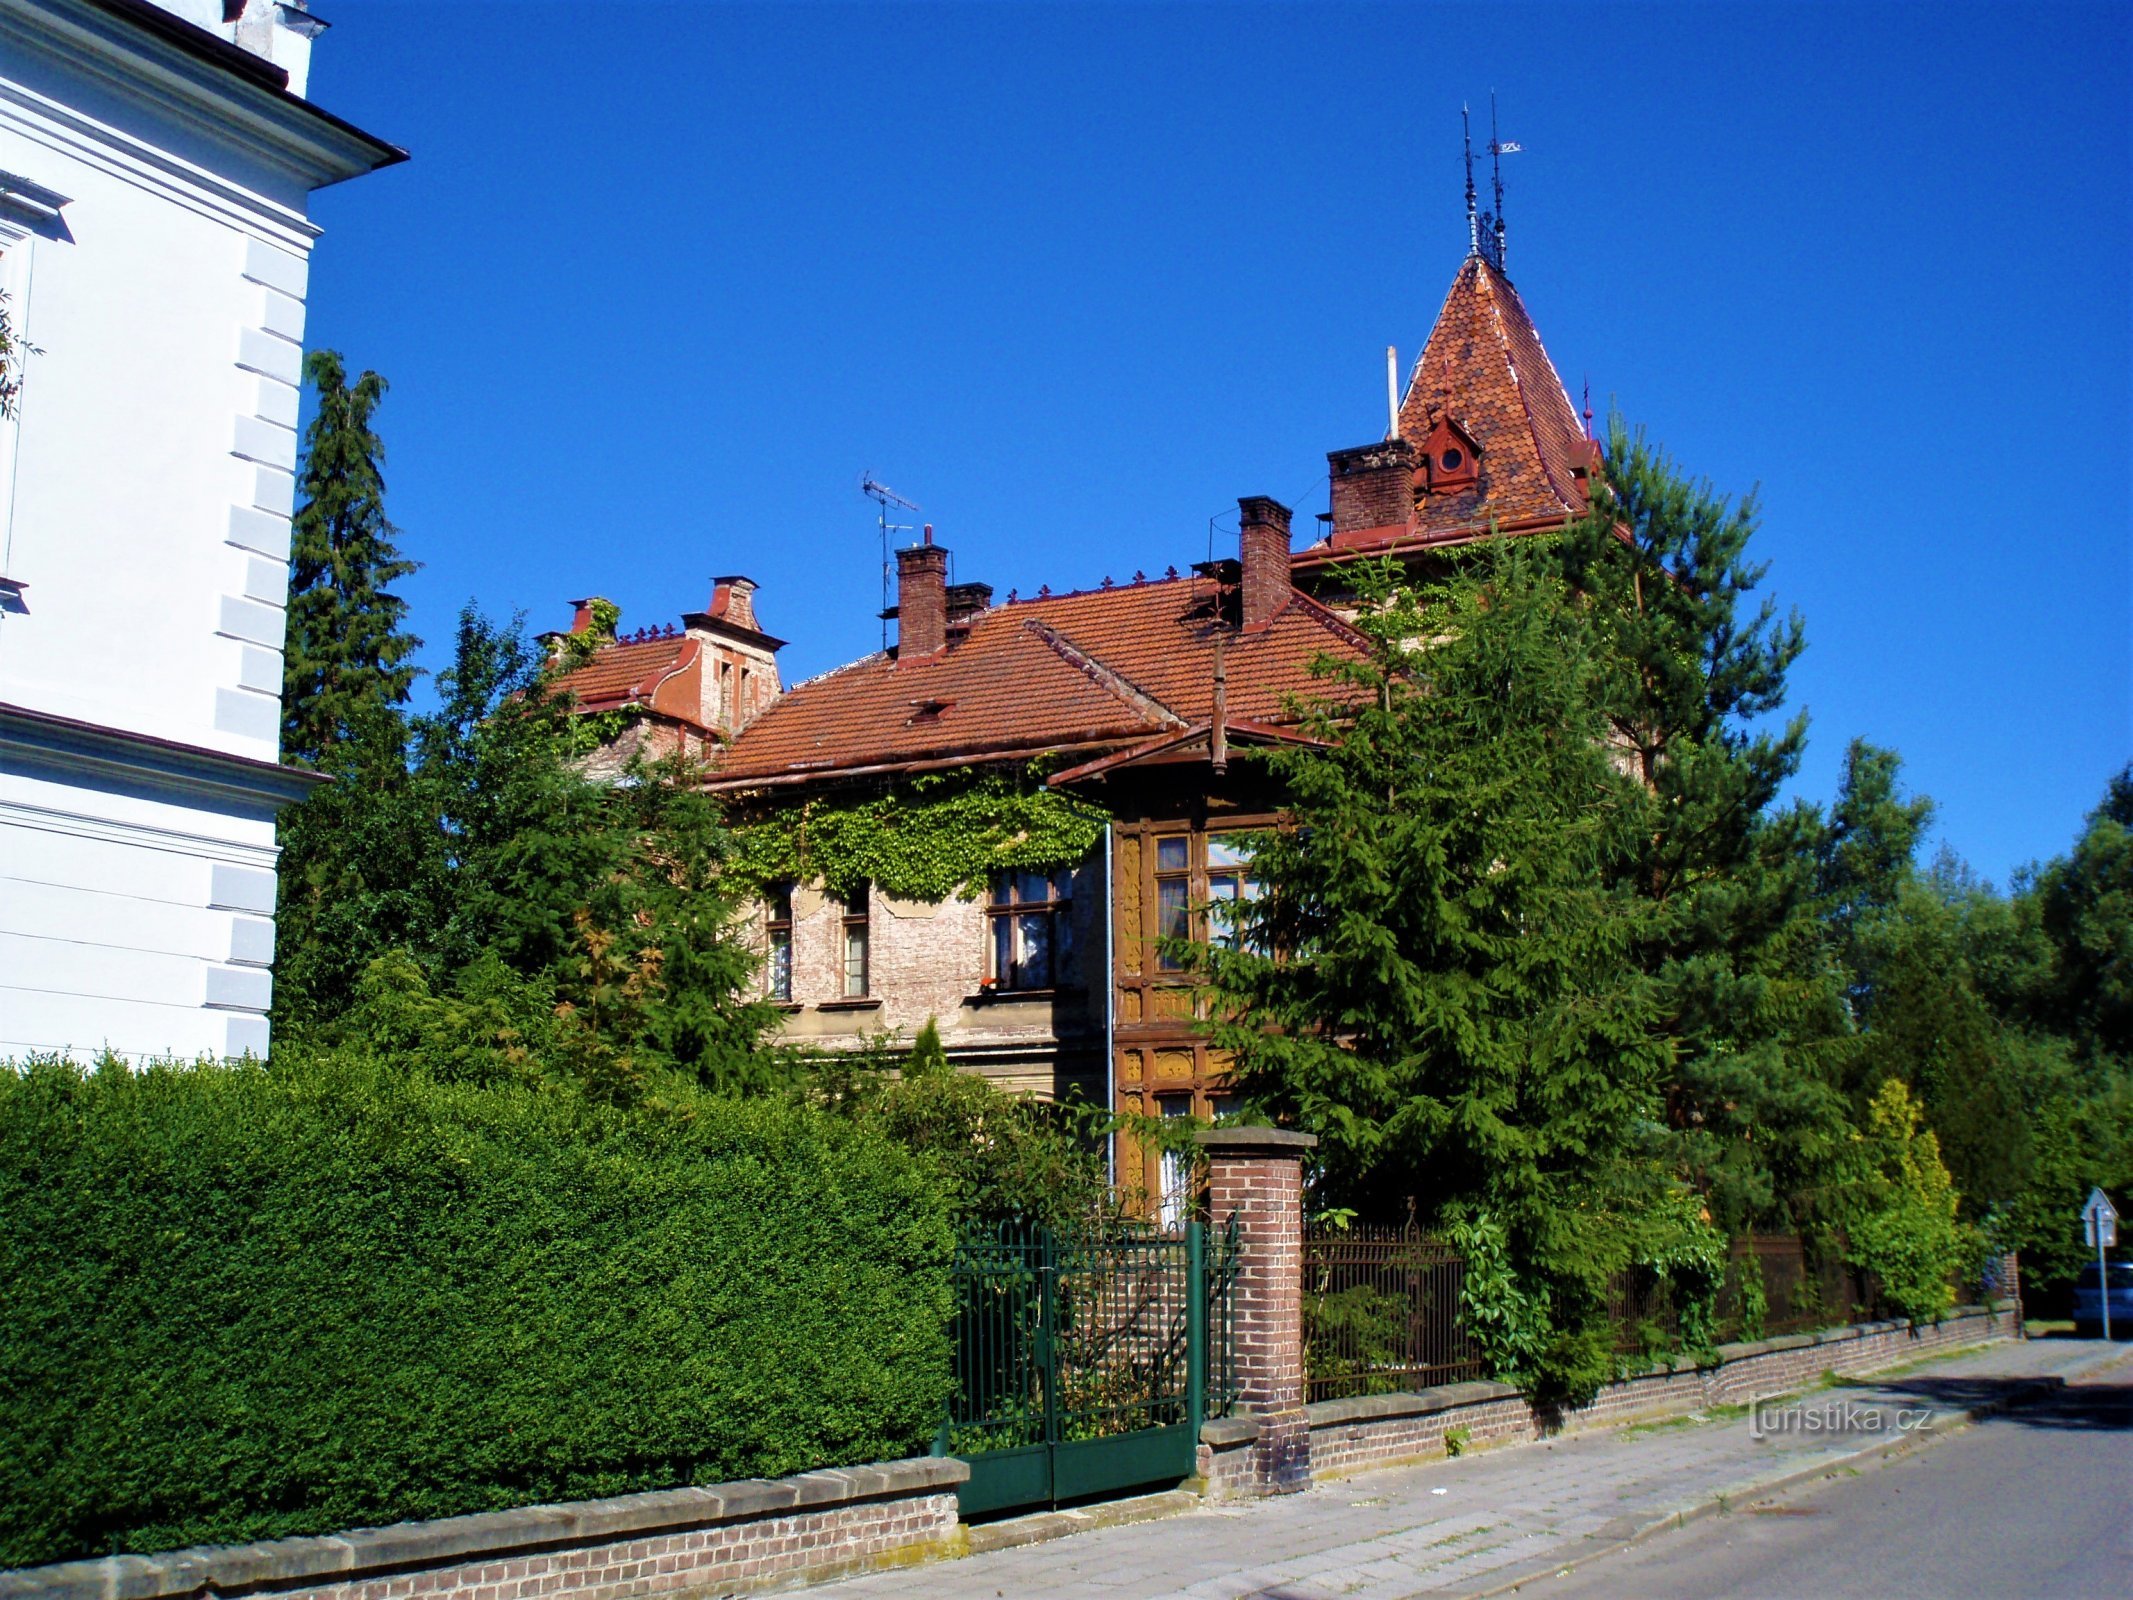 Villa de Wipler (Orlické nábřeží no. 376, Hradec Králové, 27.6.2010/XNUMX/XNUMX)